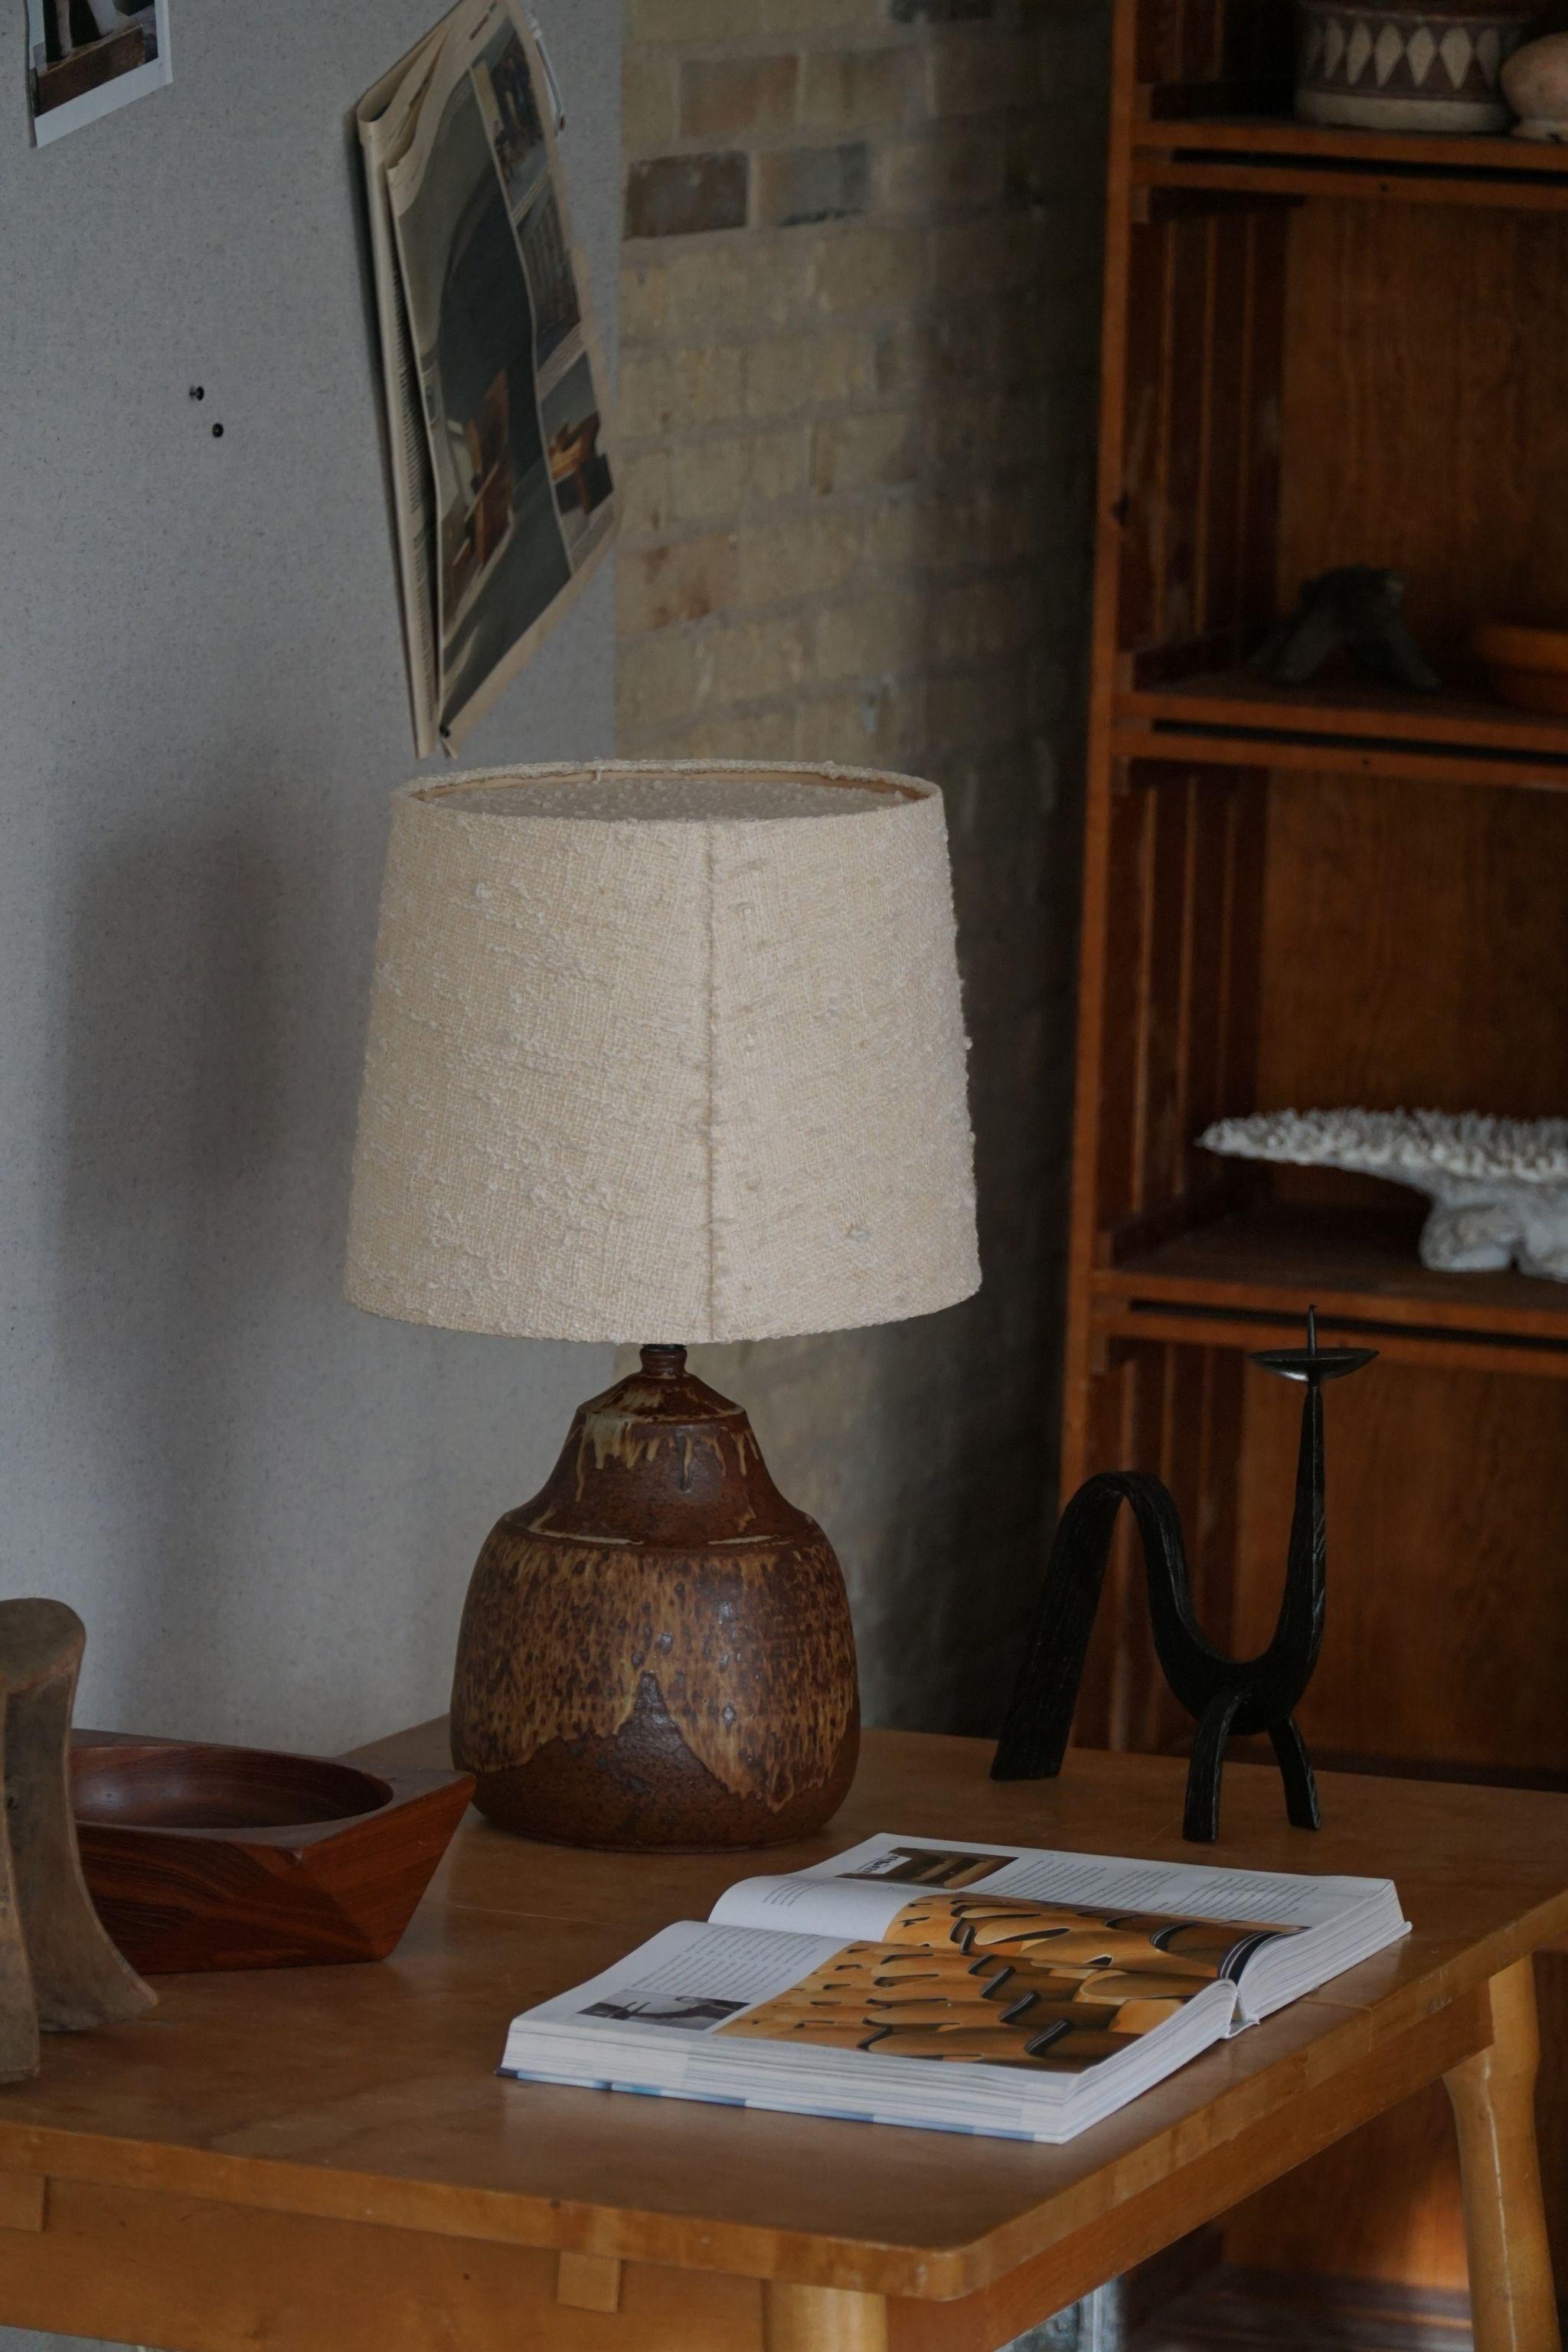 Lampe de table moderne danoise en grès de forme organique. Fabriqué en différentes couleurs terre / marron. Fabriqué dans les années 1970 par Visby Keramik, signé en dessous. 

Cet article est en très bon état. Ce bel éclairage calme s'accorde avec